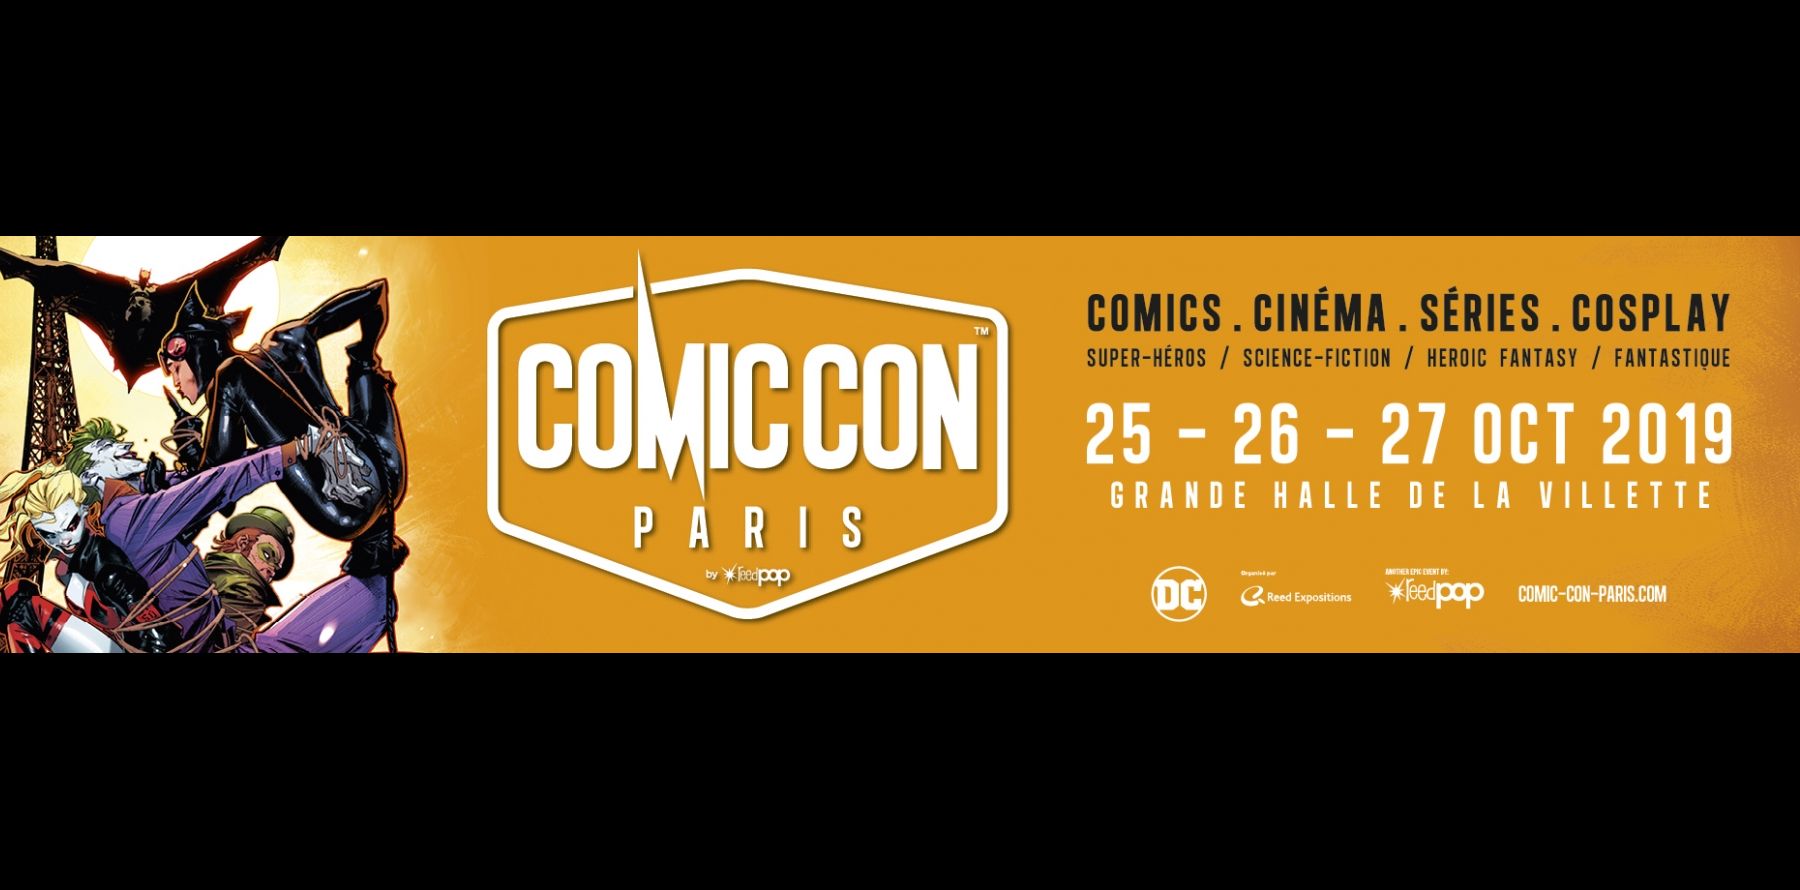 Comic Con Invités, dates, programme... Tout sur l'événement pop